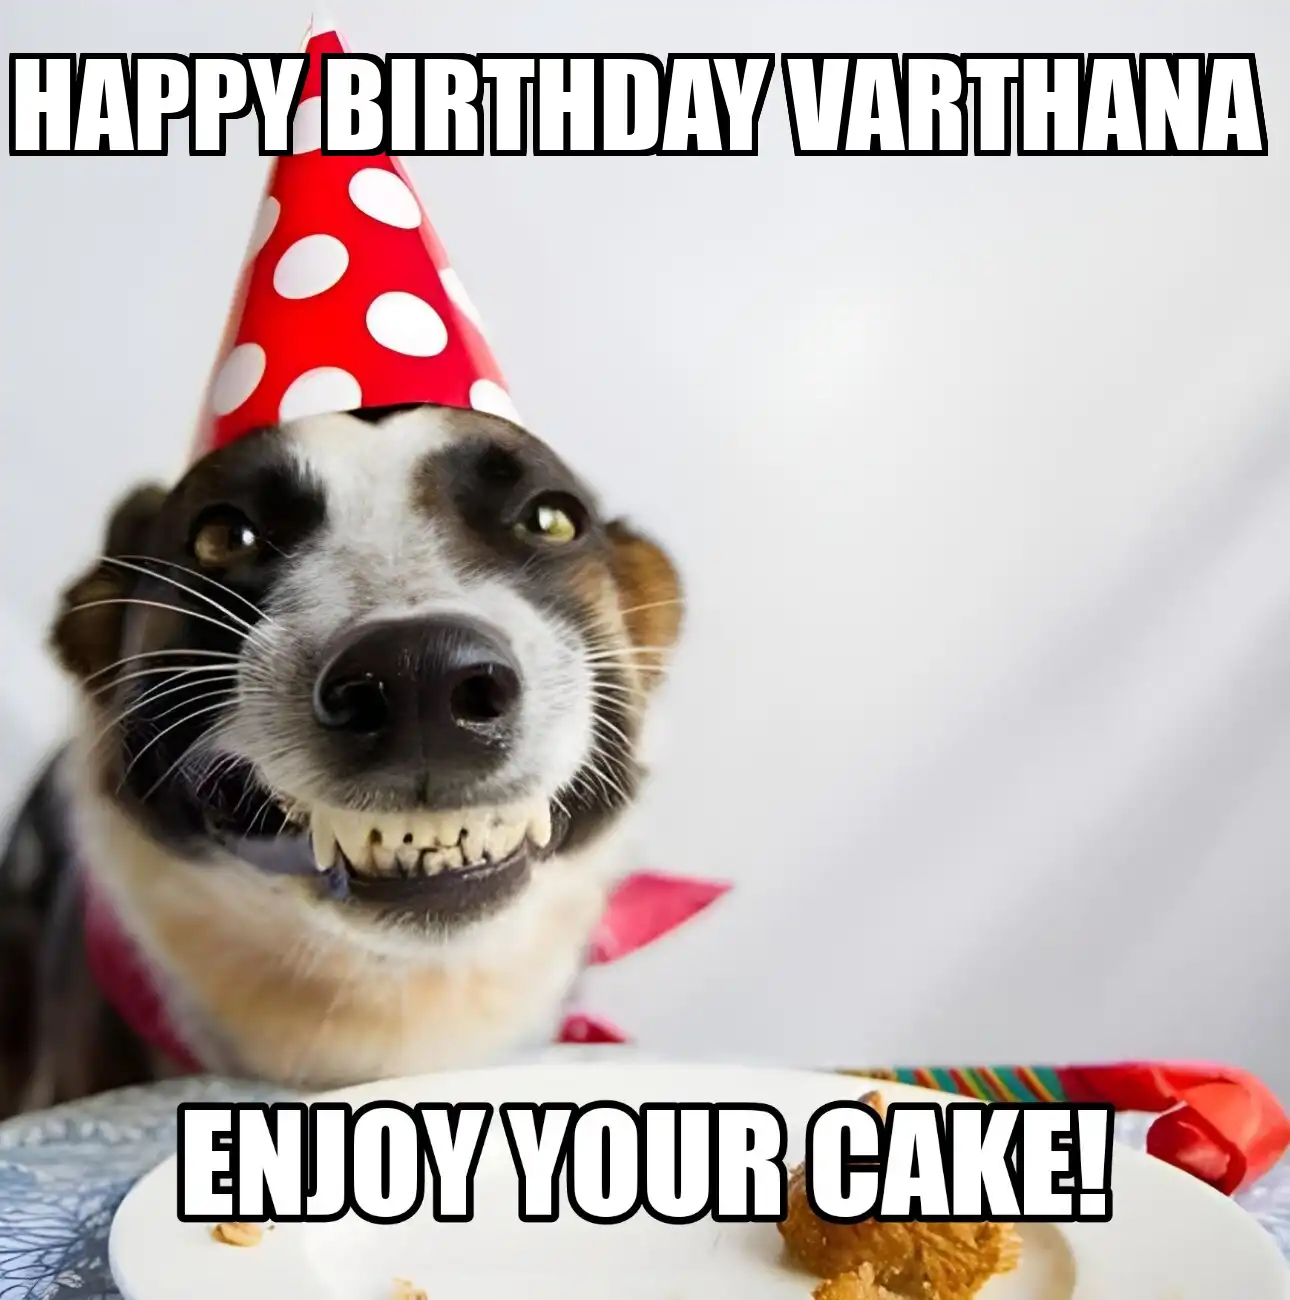 Happy Birthday Varthana Enjoy Your Cake Dog Meme